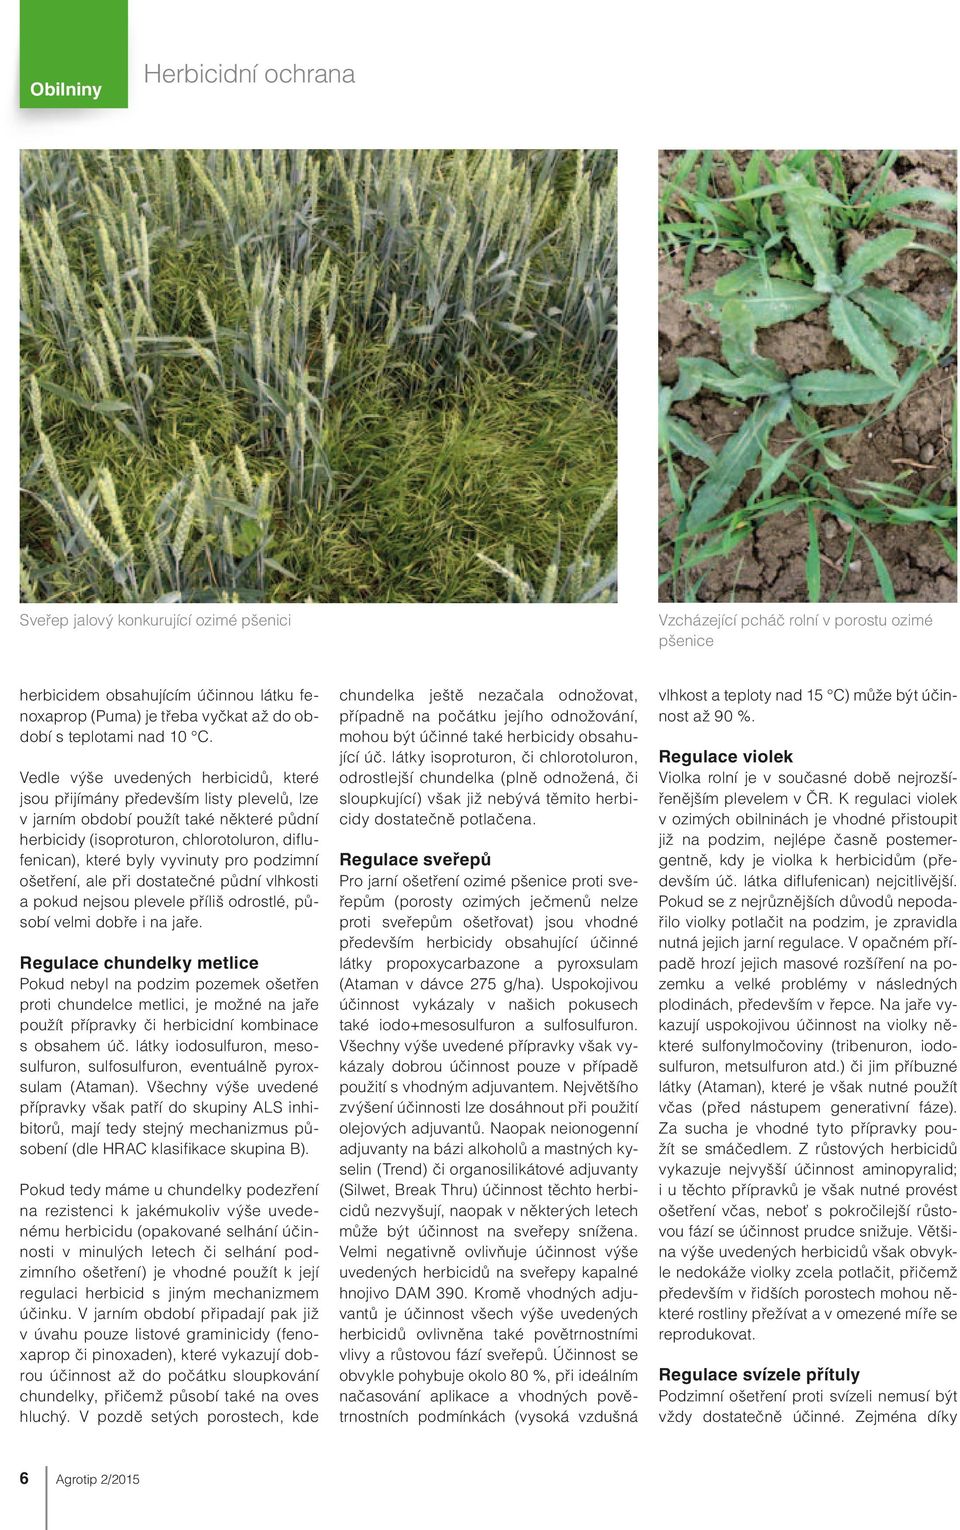 Vedle výše uvedených herbicidů, které jsou přijímány především listy plevelů, lze v jarním období použít také některé půdní herbicidy (isoproturon, chlorotoluron, diflufenican), které byly vyvinuty